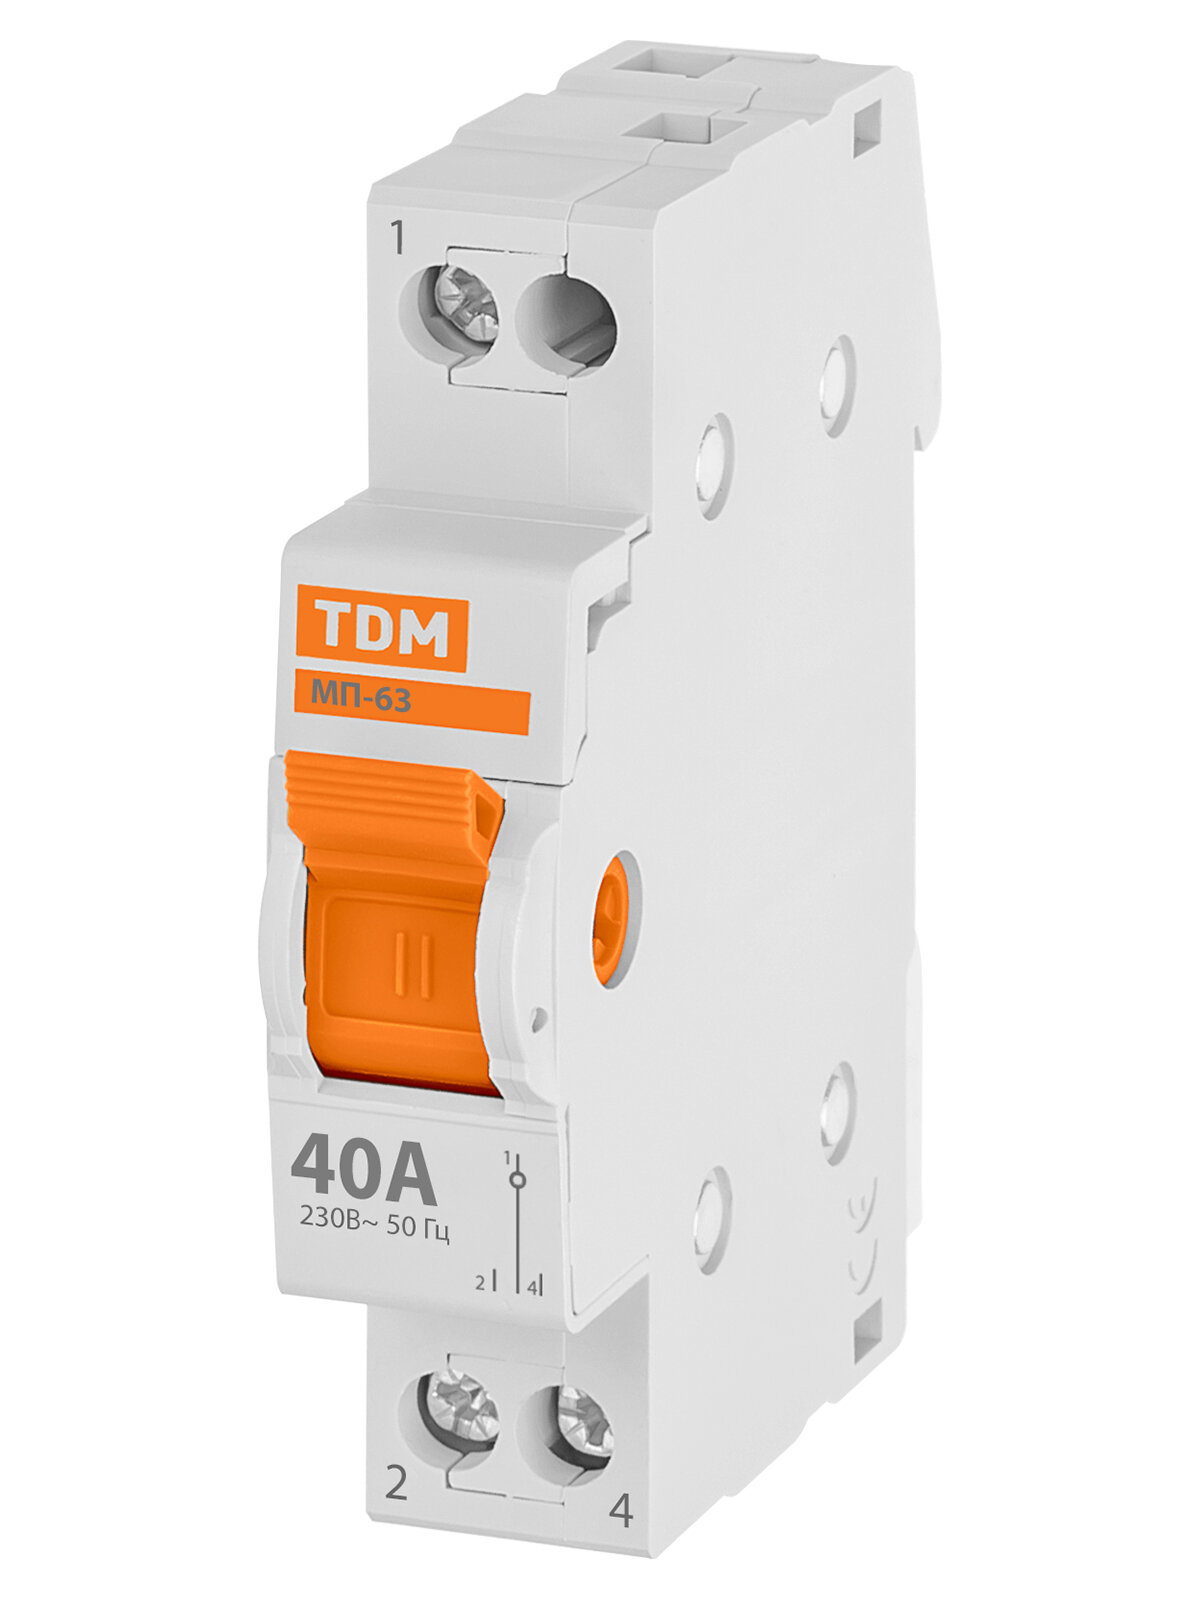 Переключатель TDM Electric МП-63 модульный трехпозиционный 40А IP20 белый